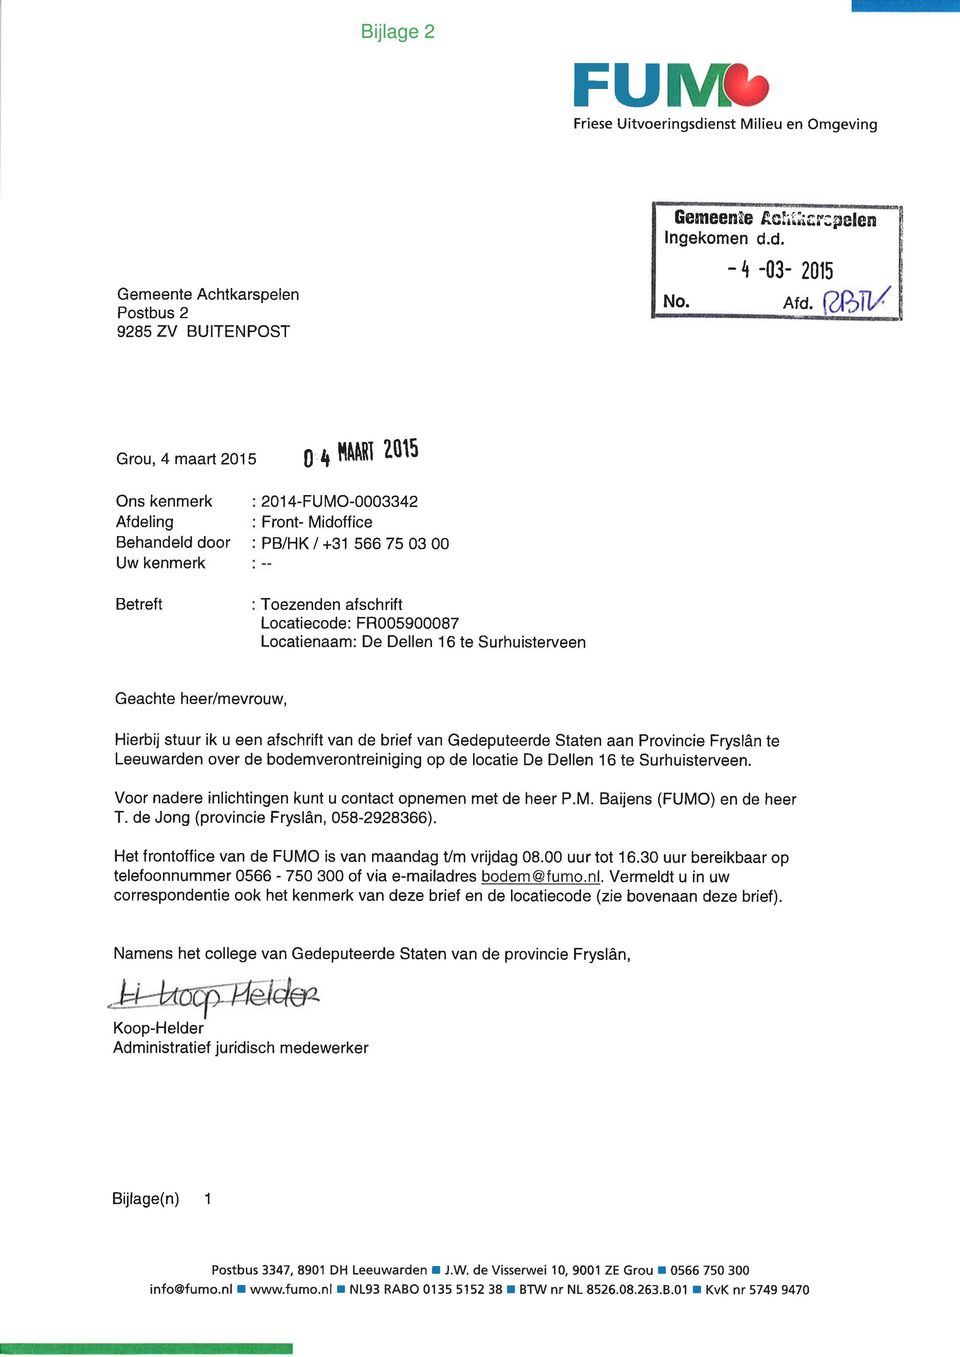 Surhuisterveen Geachte heer/mevrouw, Hierbij stuur ik u een afschrift van de brief van Gedeputeerde Staten aan Provincie Fryslân te Leeuwarden over de bodemverontreiniging op de locatie De Dellen 16